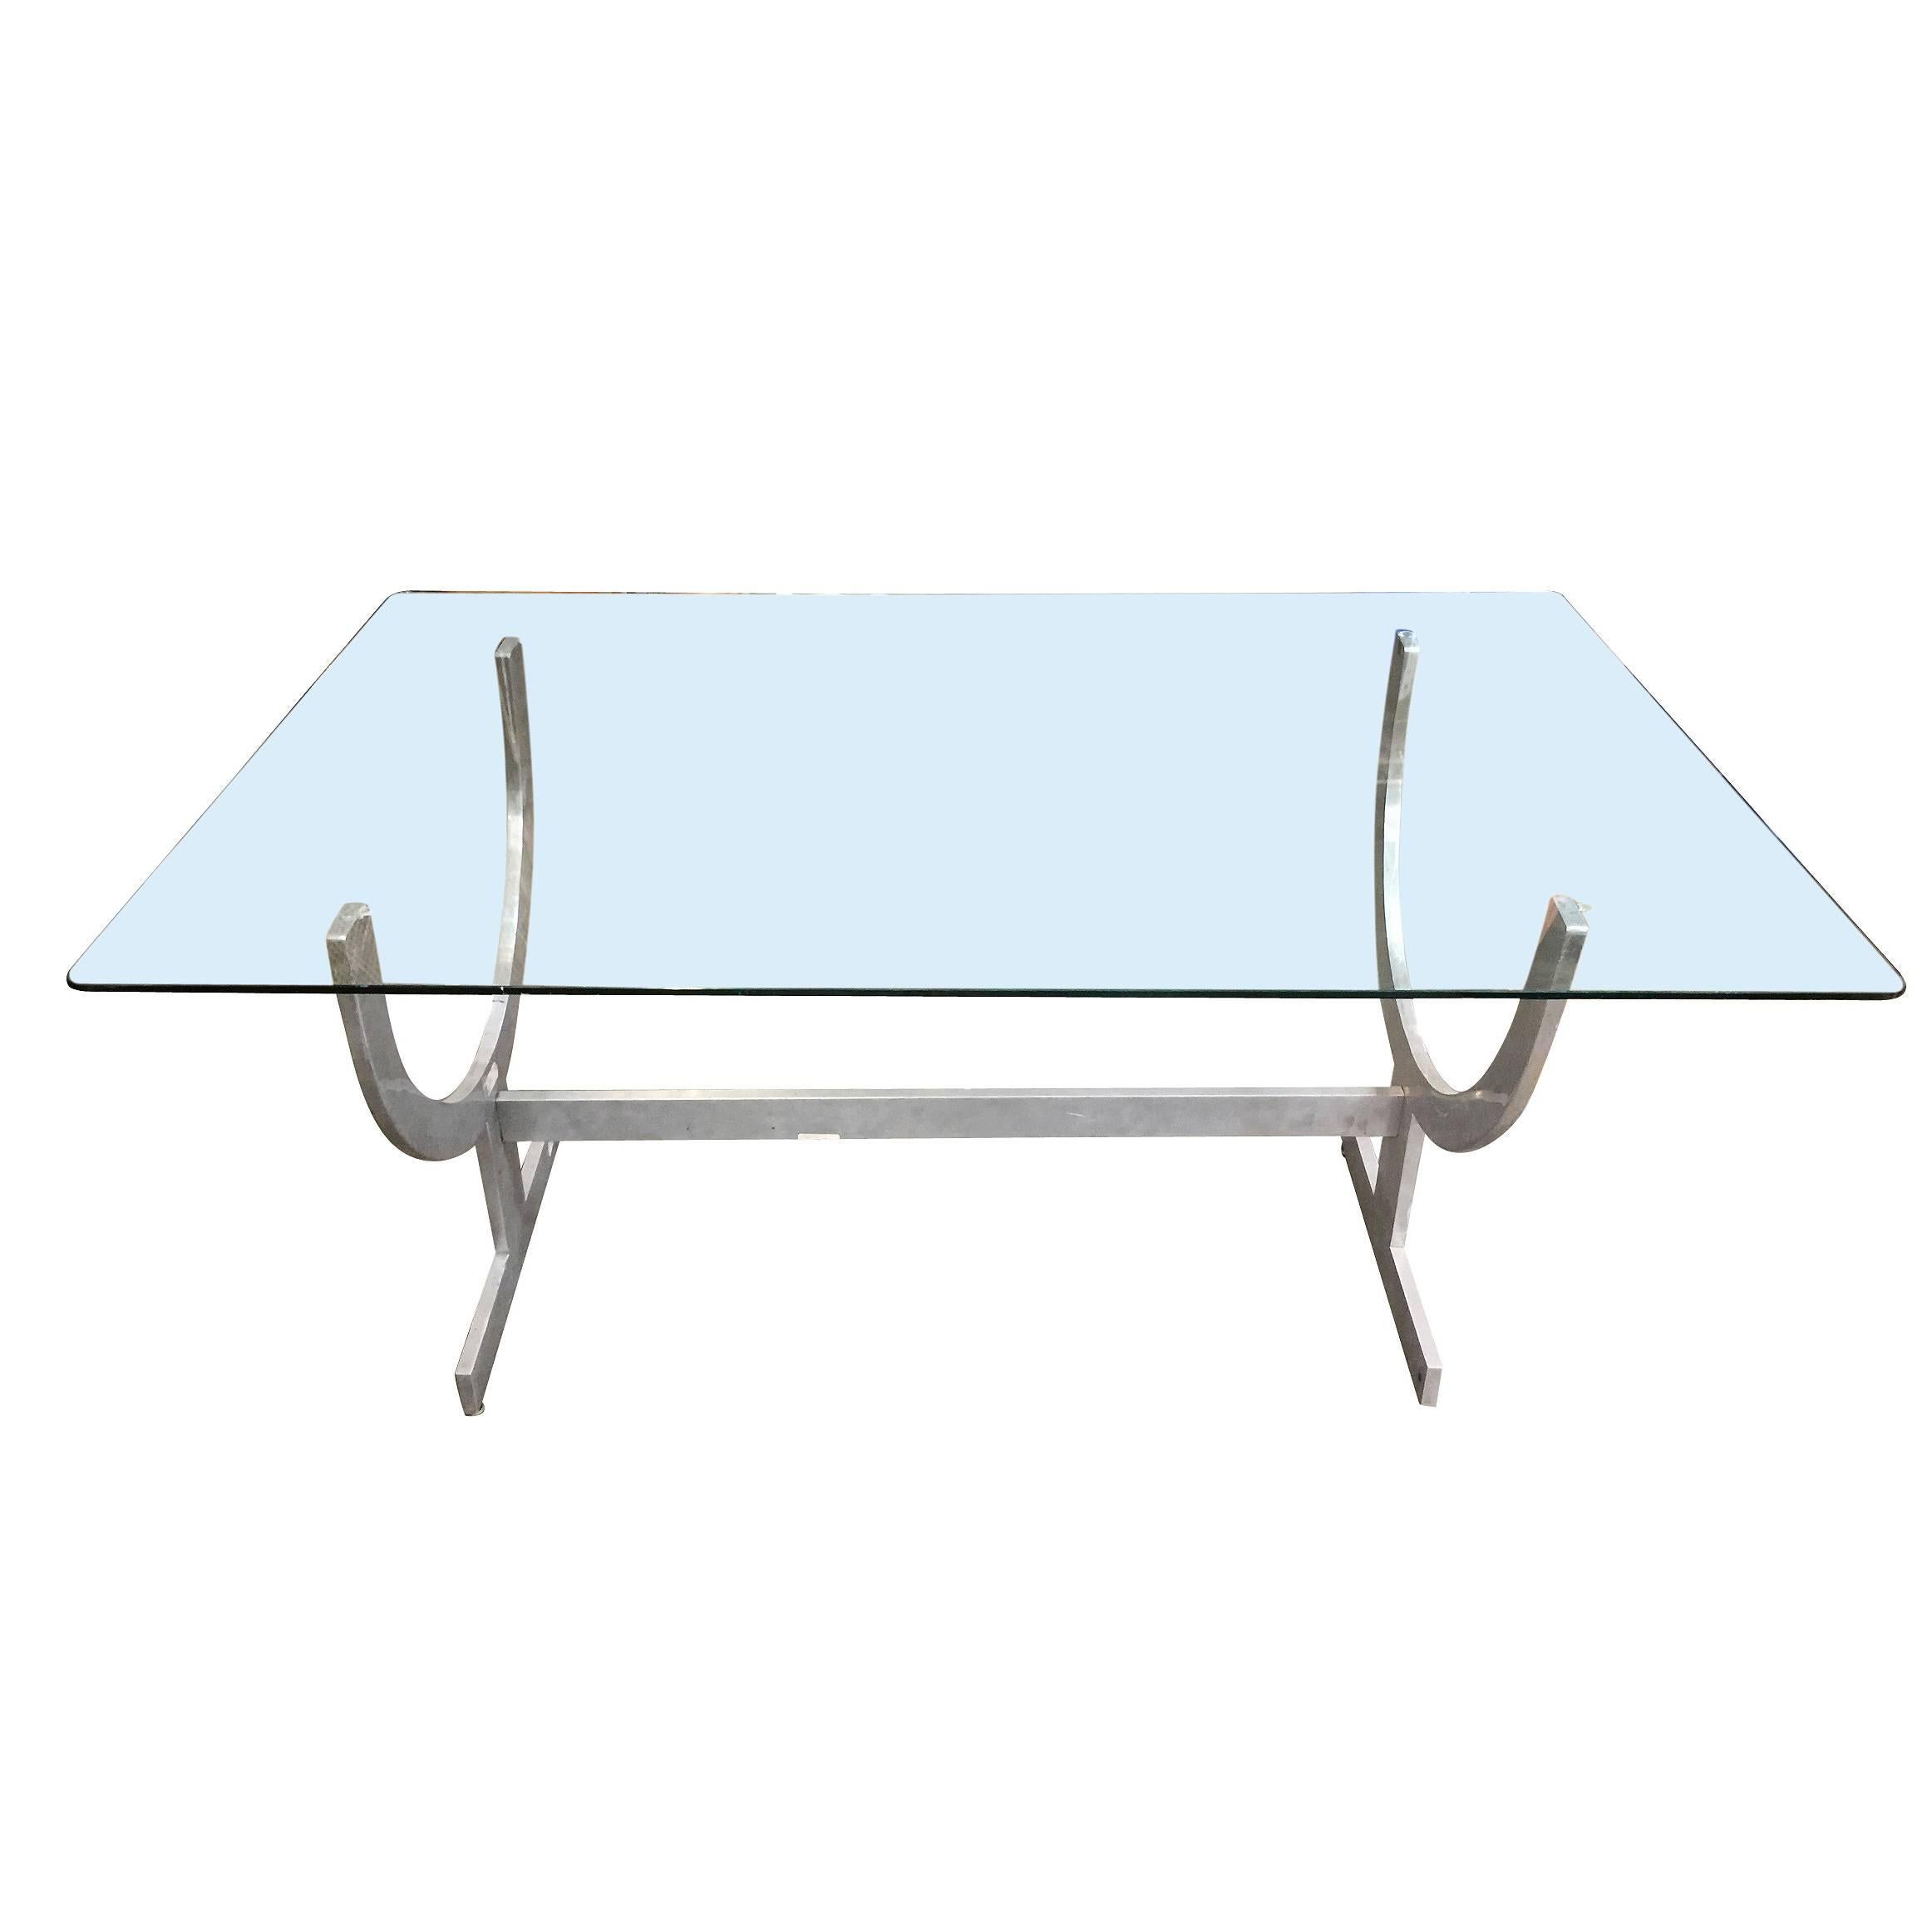 Maßgefertigter modernistischer Esstisch mit maschinell bearbeiteter Aluminiumbasis. Perfekt für das futuristische und modernistische Umfeld. Der Tisch eignet sich gut als großer Schreibtisch. 

  